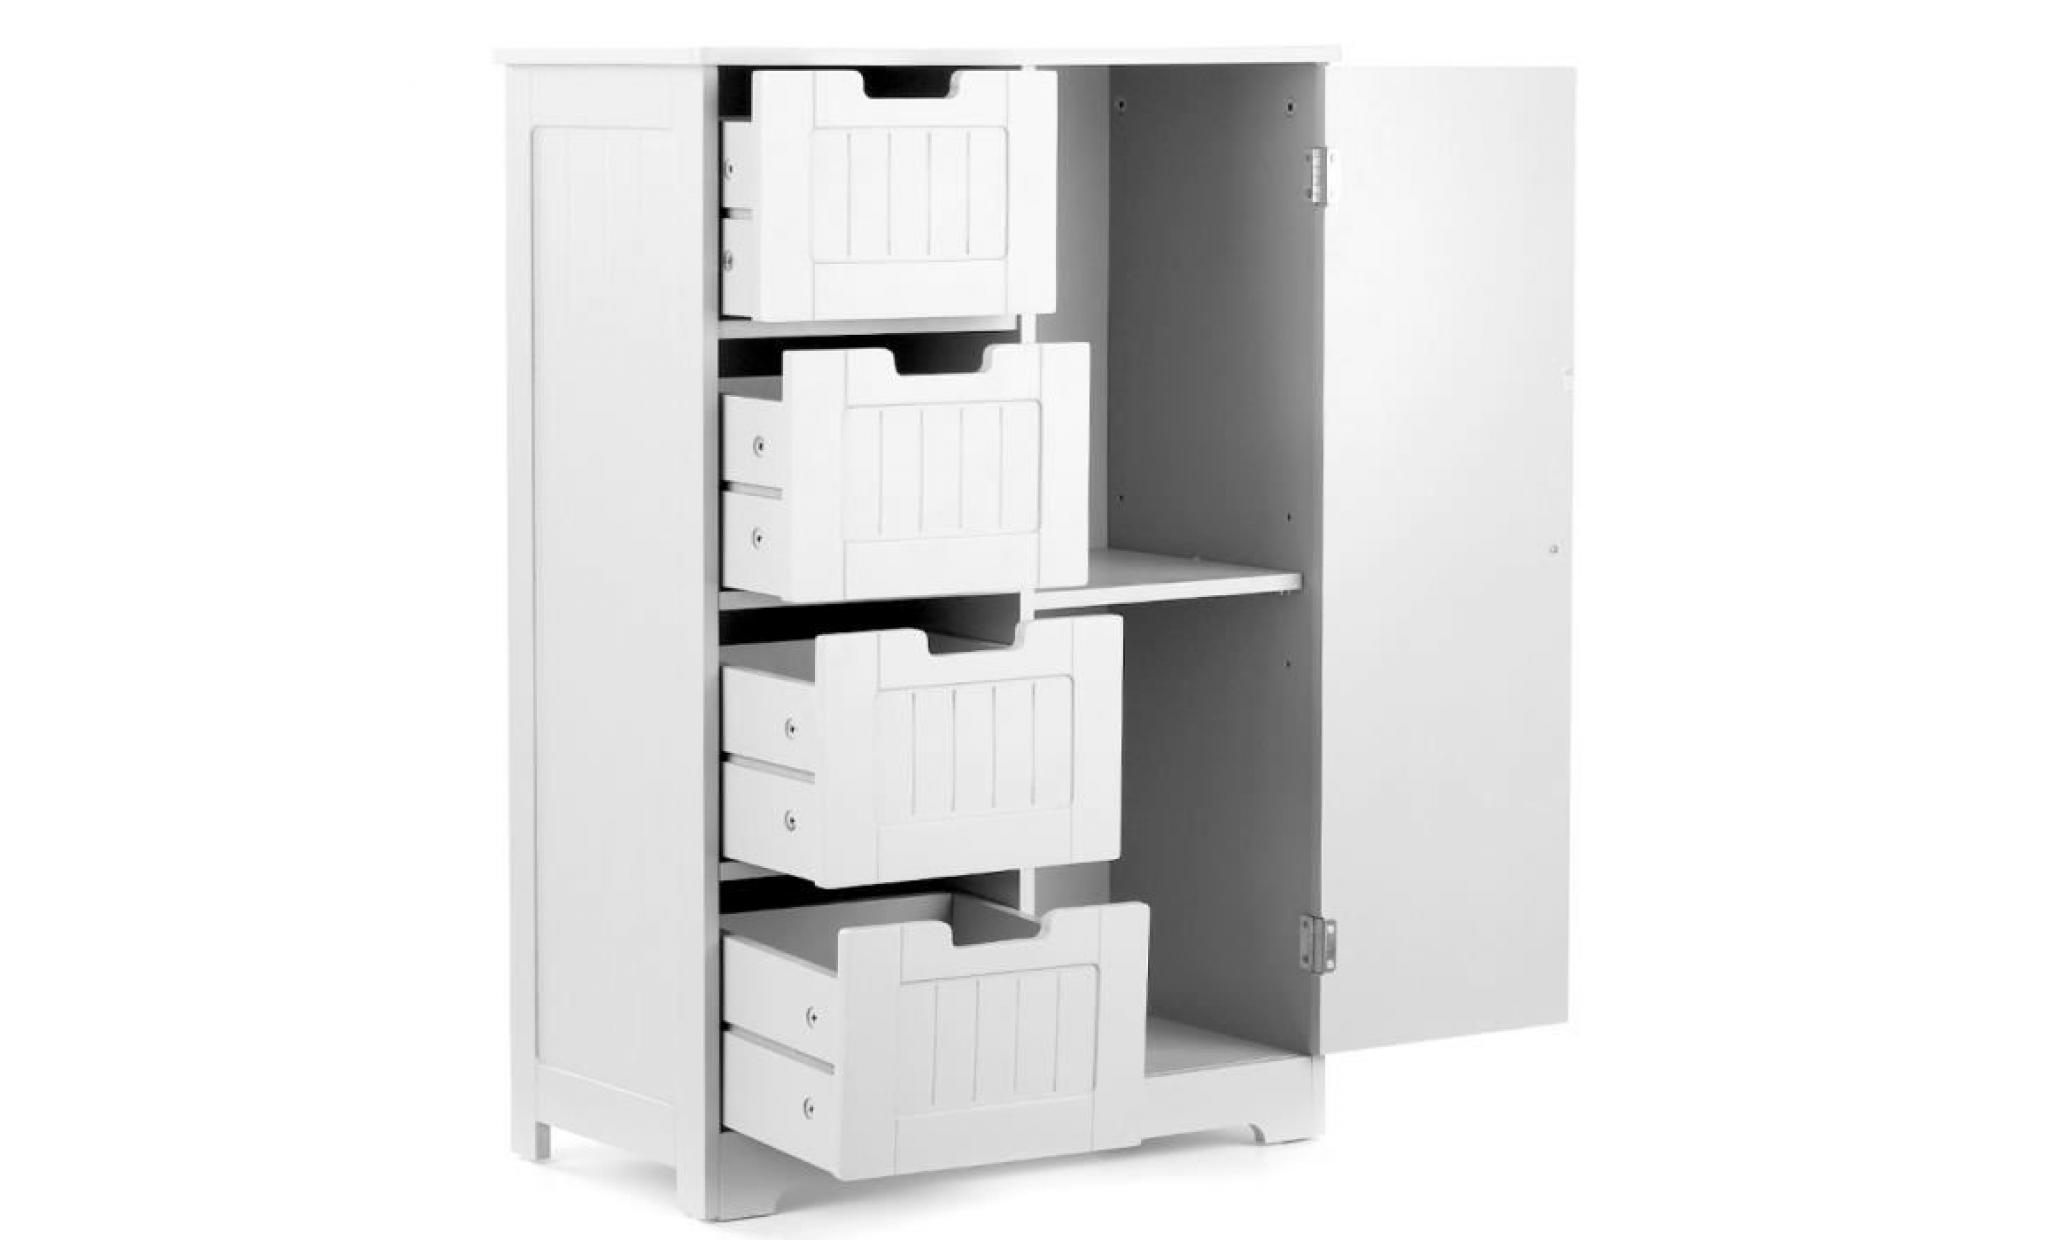 ikayaa 56 * 30 * 81cm cabinet de rangement 4 tiroir style européen meuble armoire de storage pour salon salle de bain cuisine pas cher